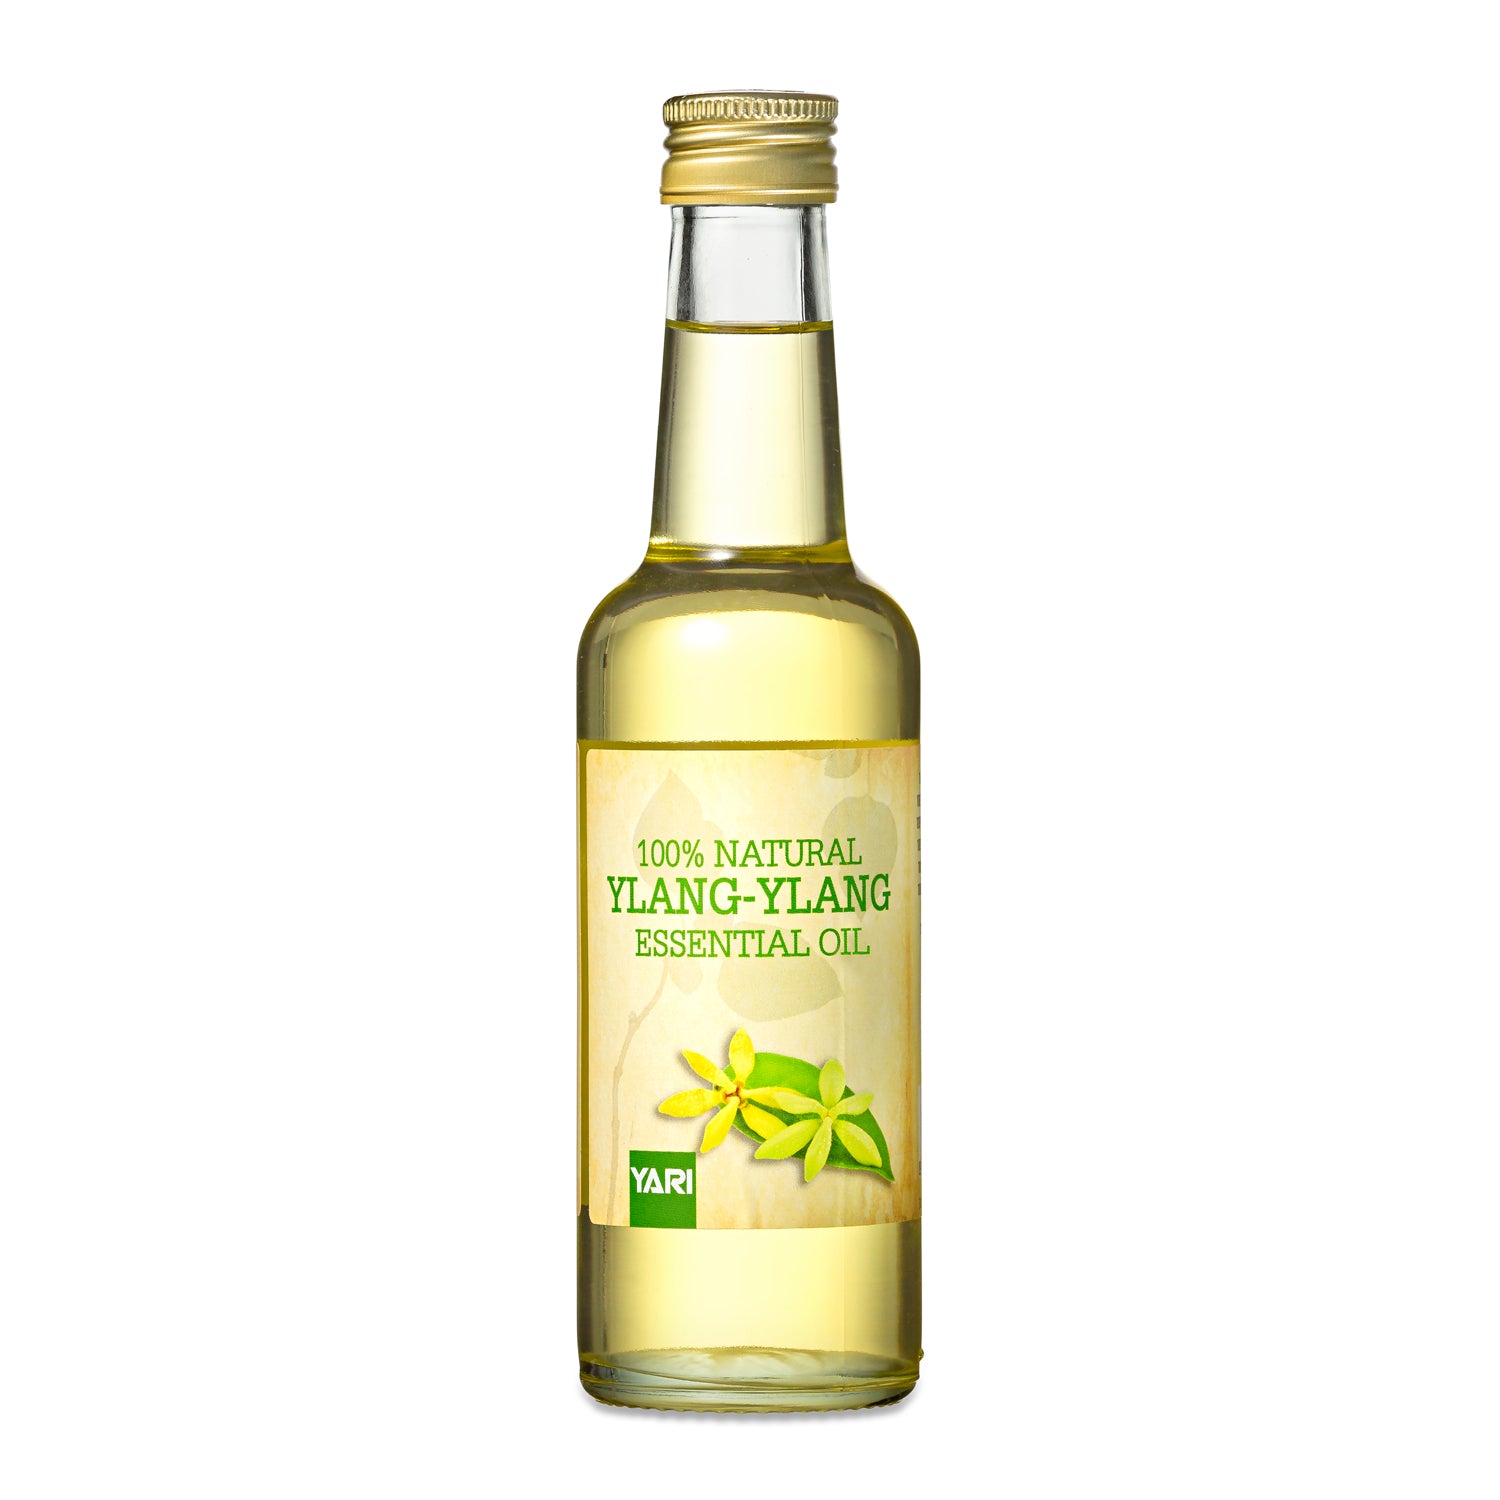 Yari - 100% Natural Ylang-Ylang Essential Oil 250ml